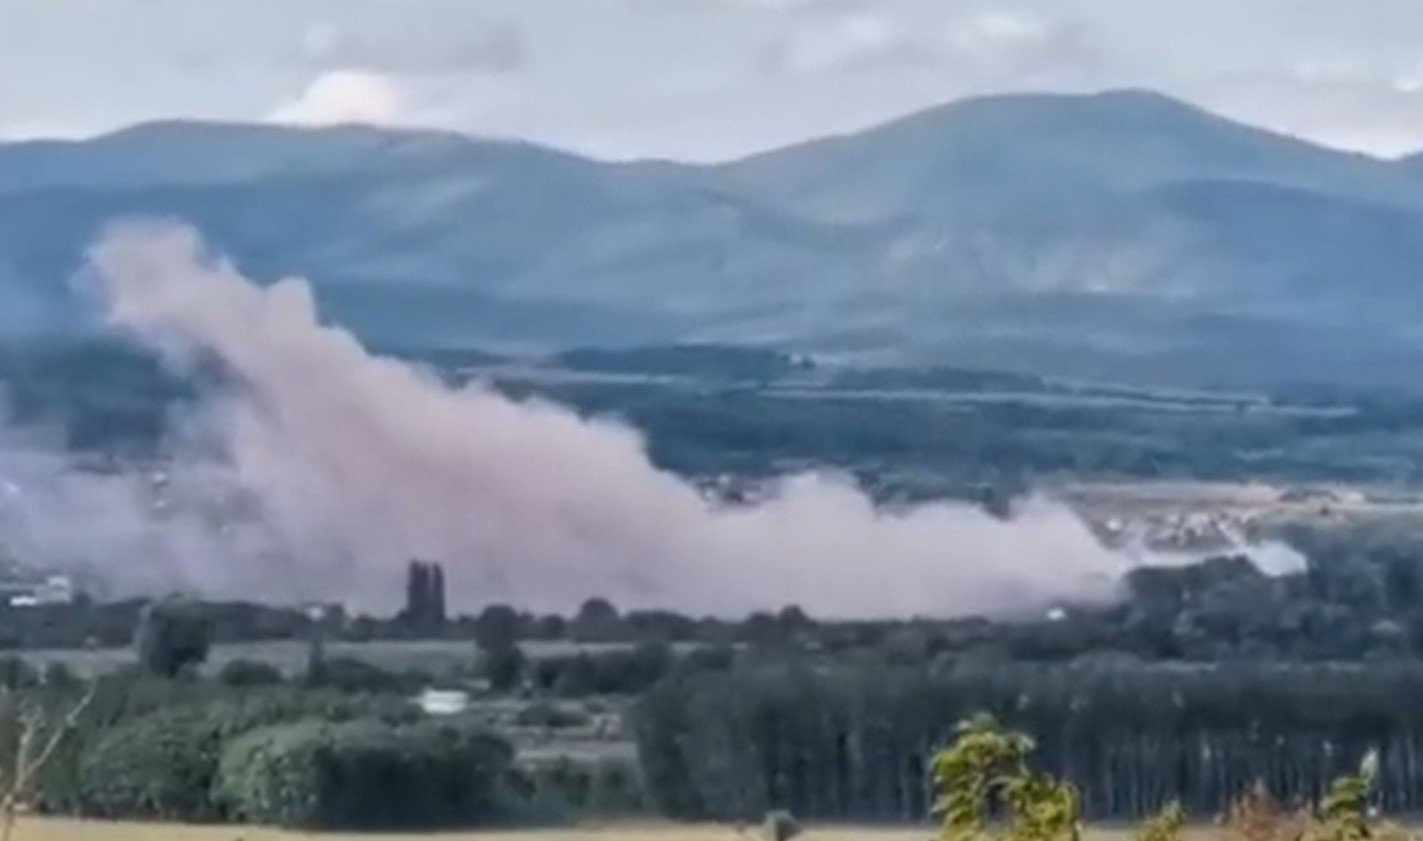  Explozie la o fabrică de armament din Bulgaria: un mort, o rănită şi două femei date dispărute